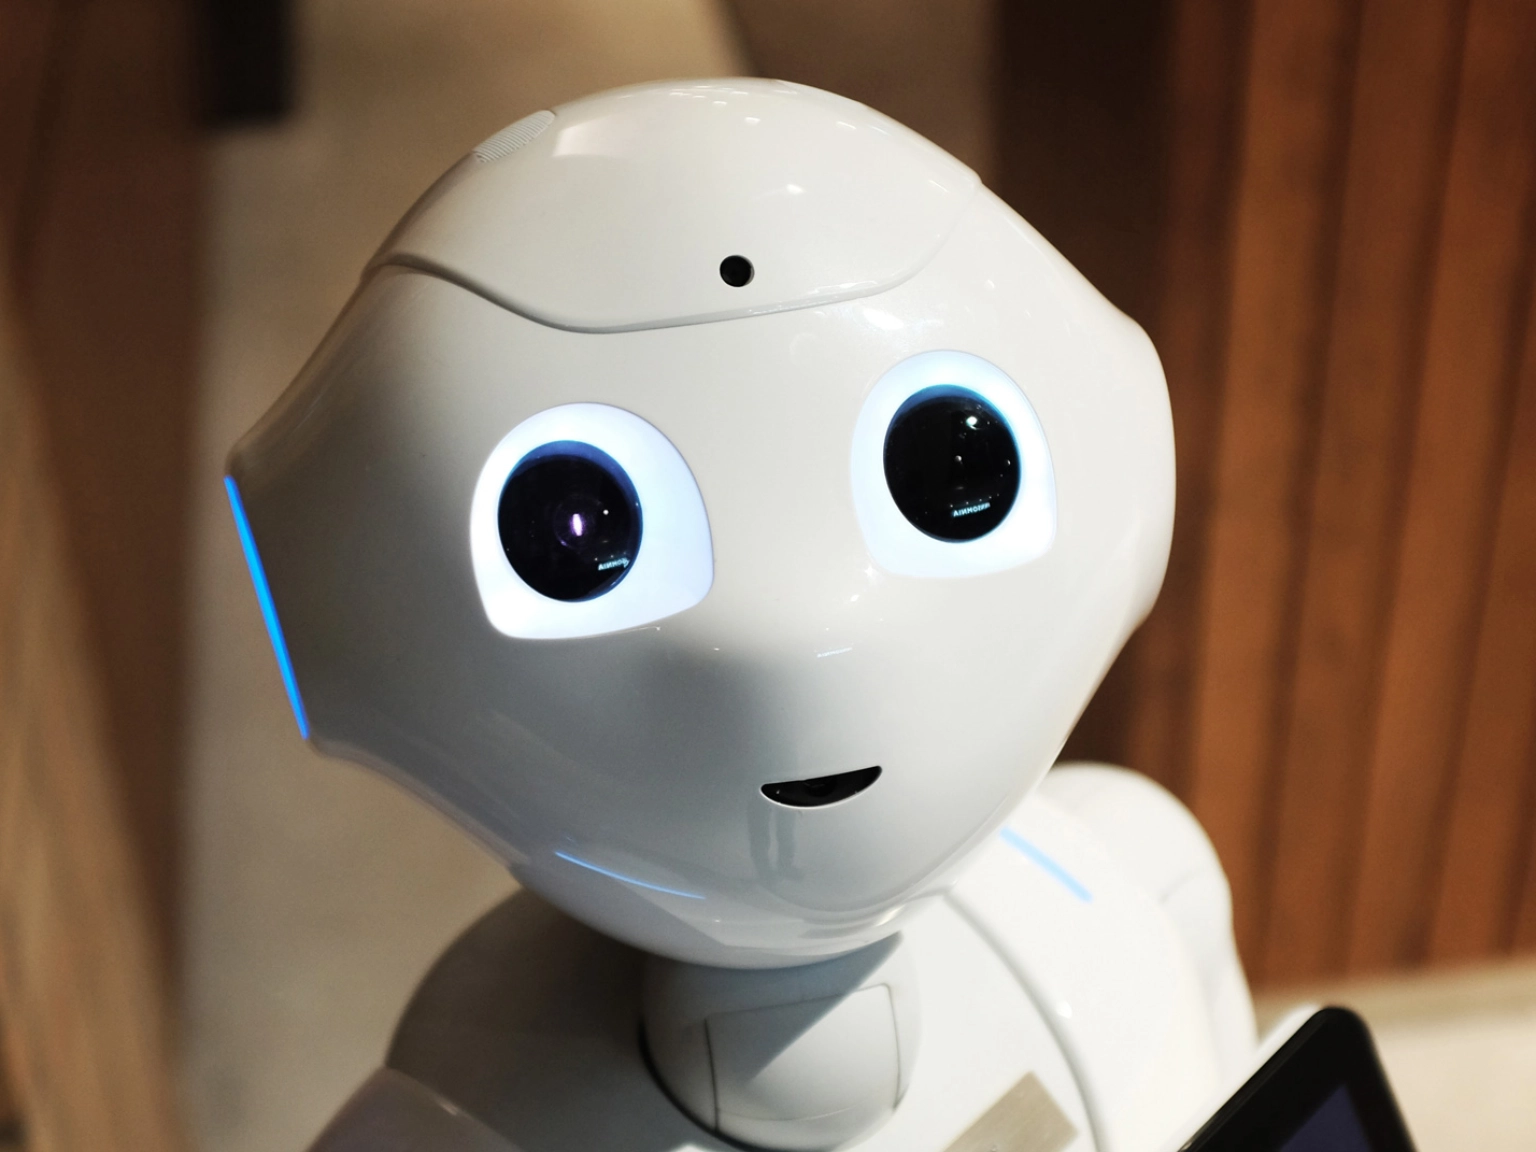 Der kindlich wirkende Roboter Pepper mit den großen Augen blickt in die Kamera.